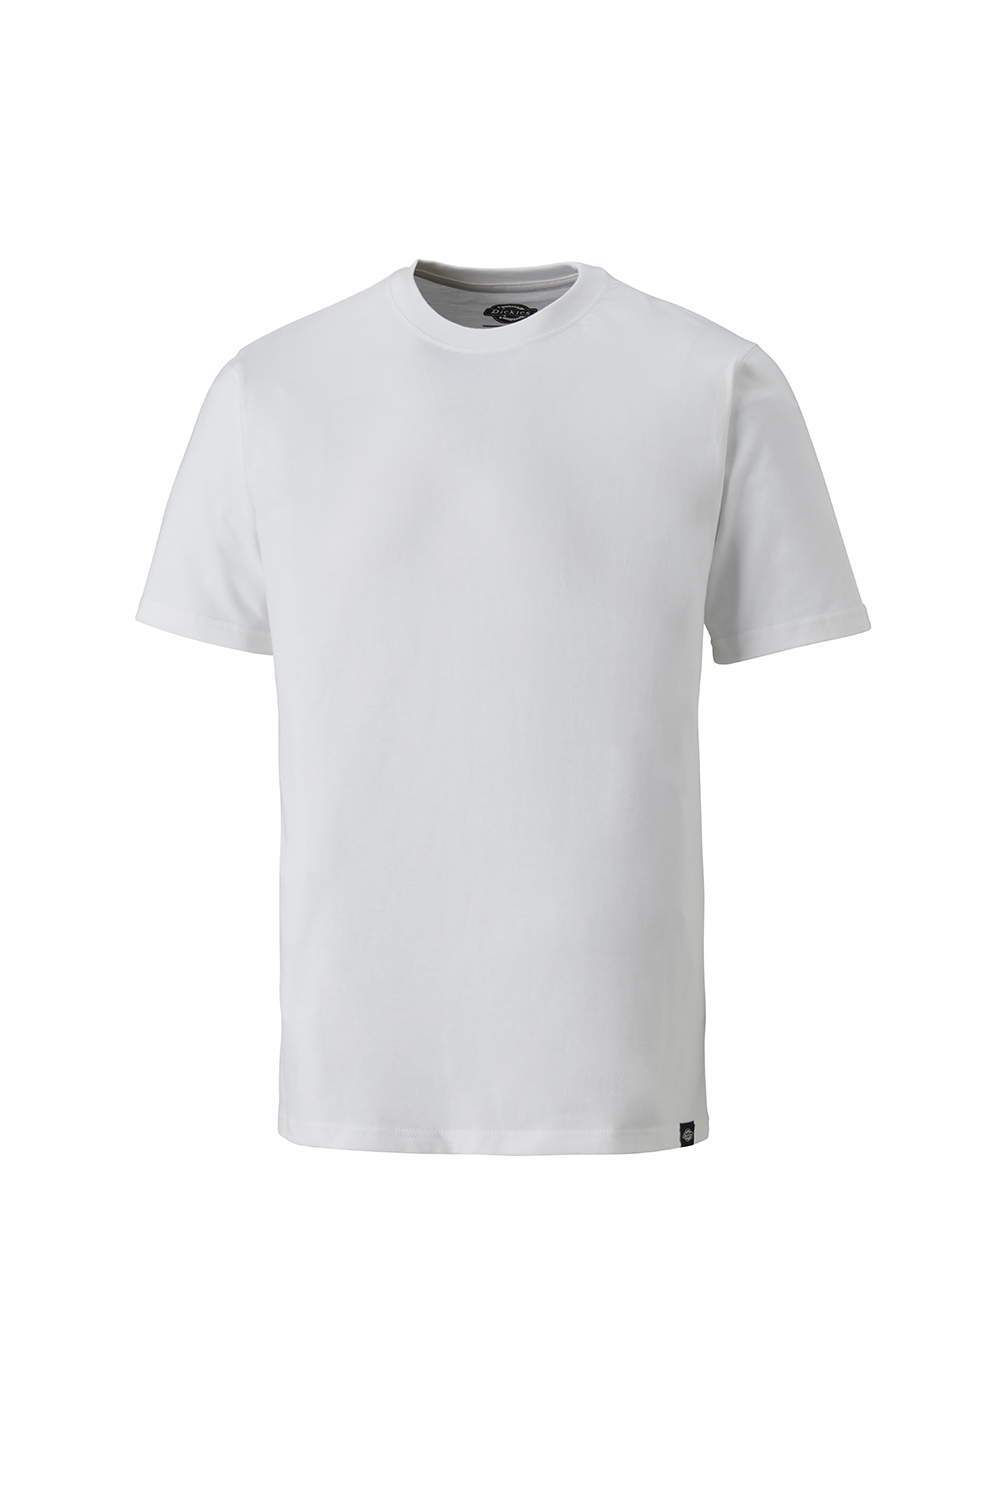 Dickies Unisex T-Shirt, Weiss